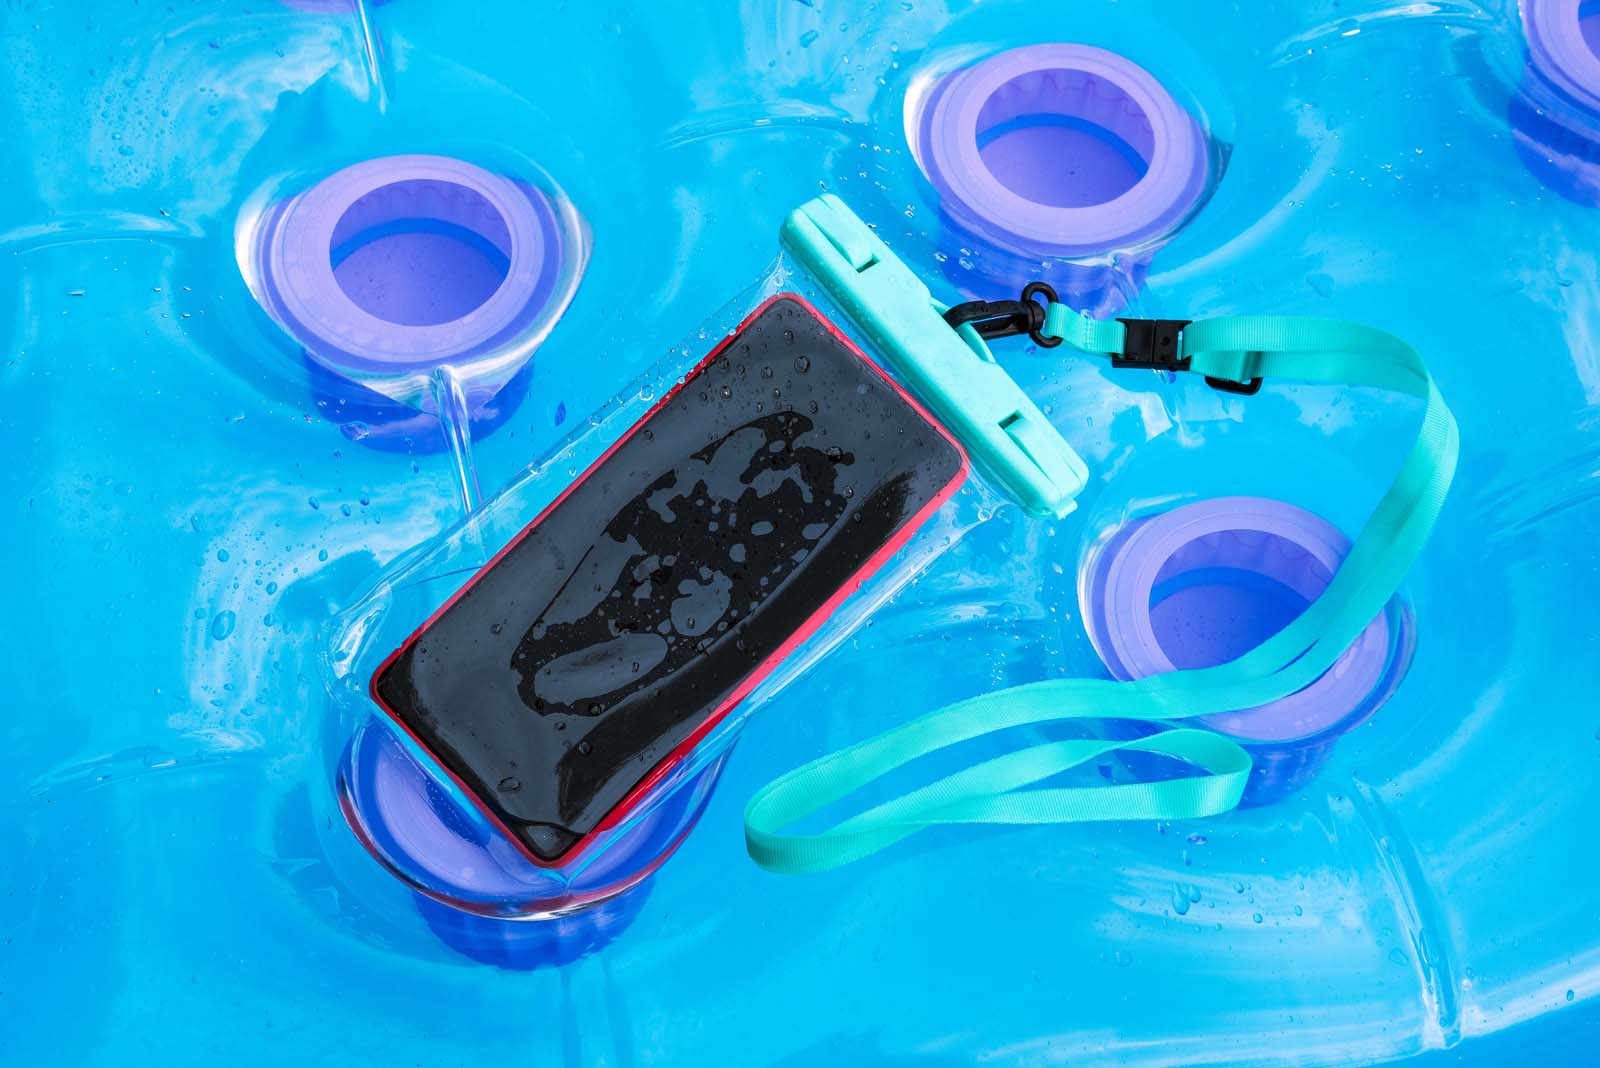 Waterproof phone case | galapagos packing list 